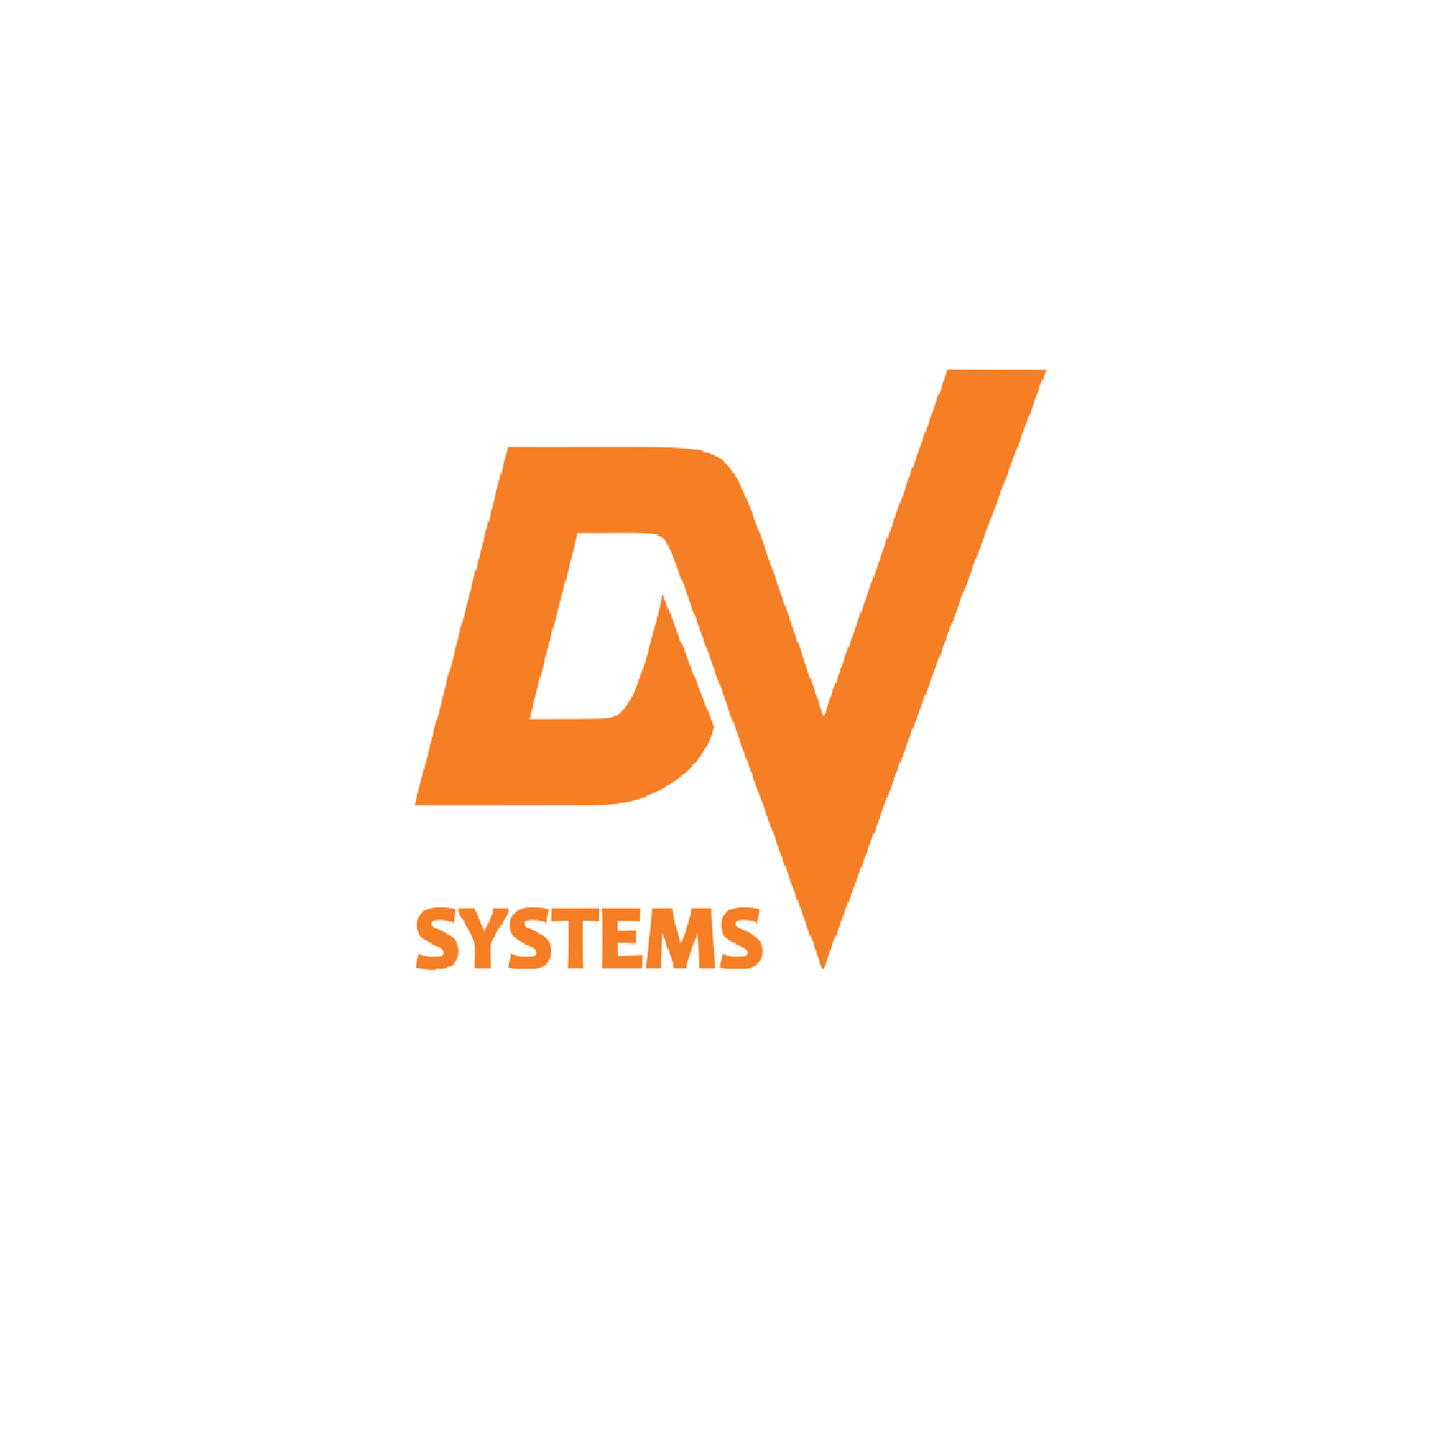 Dsc-001468 inverter 575v 40hp dv systems